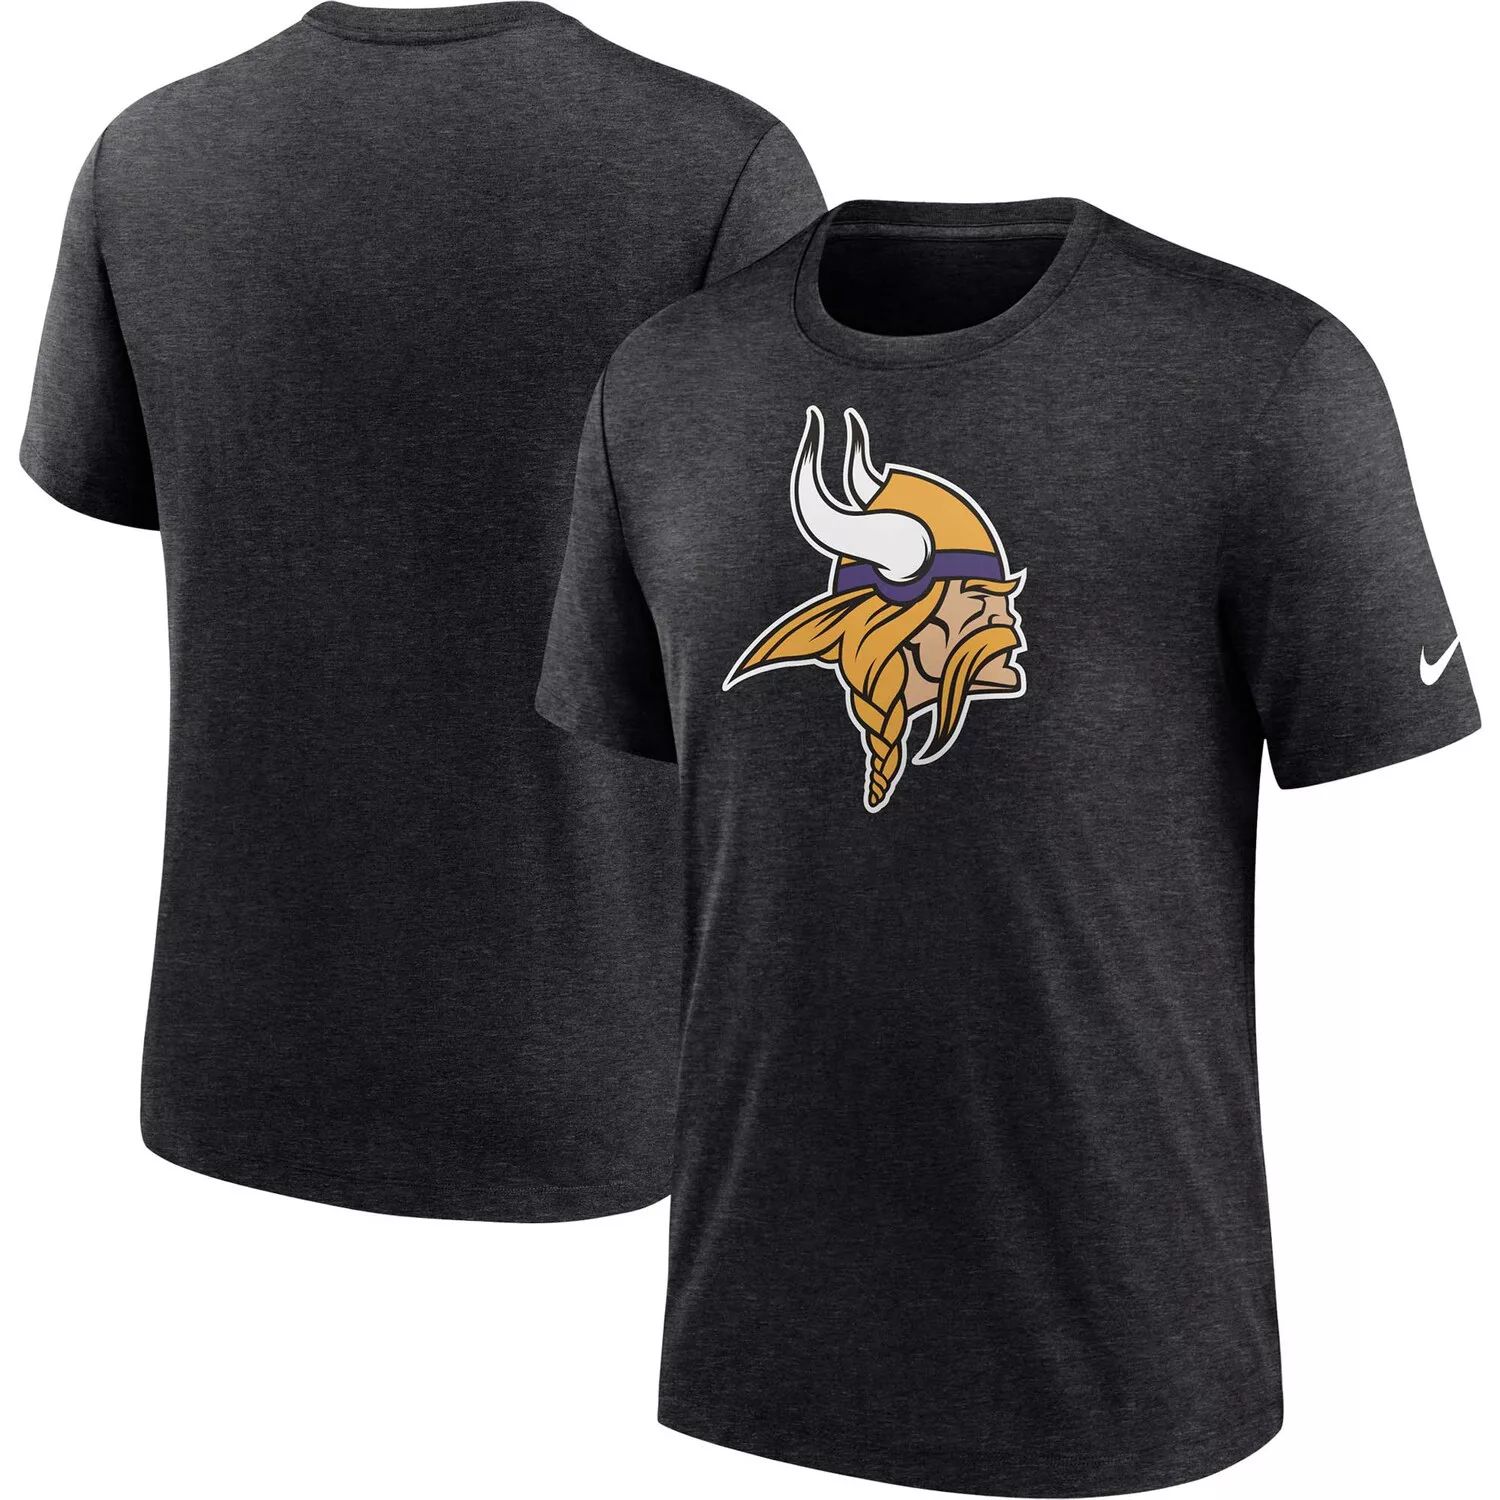 Мужская черная футболка с логотипом Minnesota Vikings Heather Tri-Blend Nike